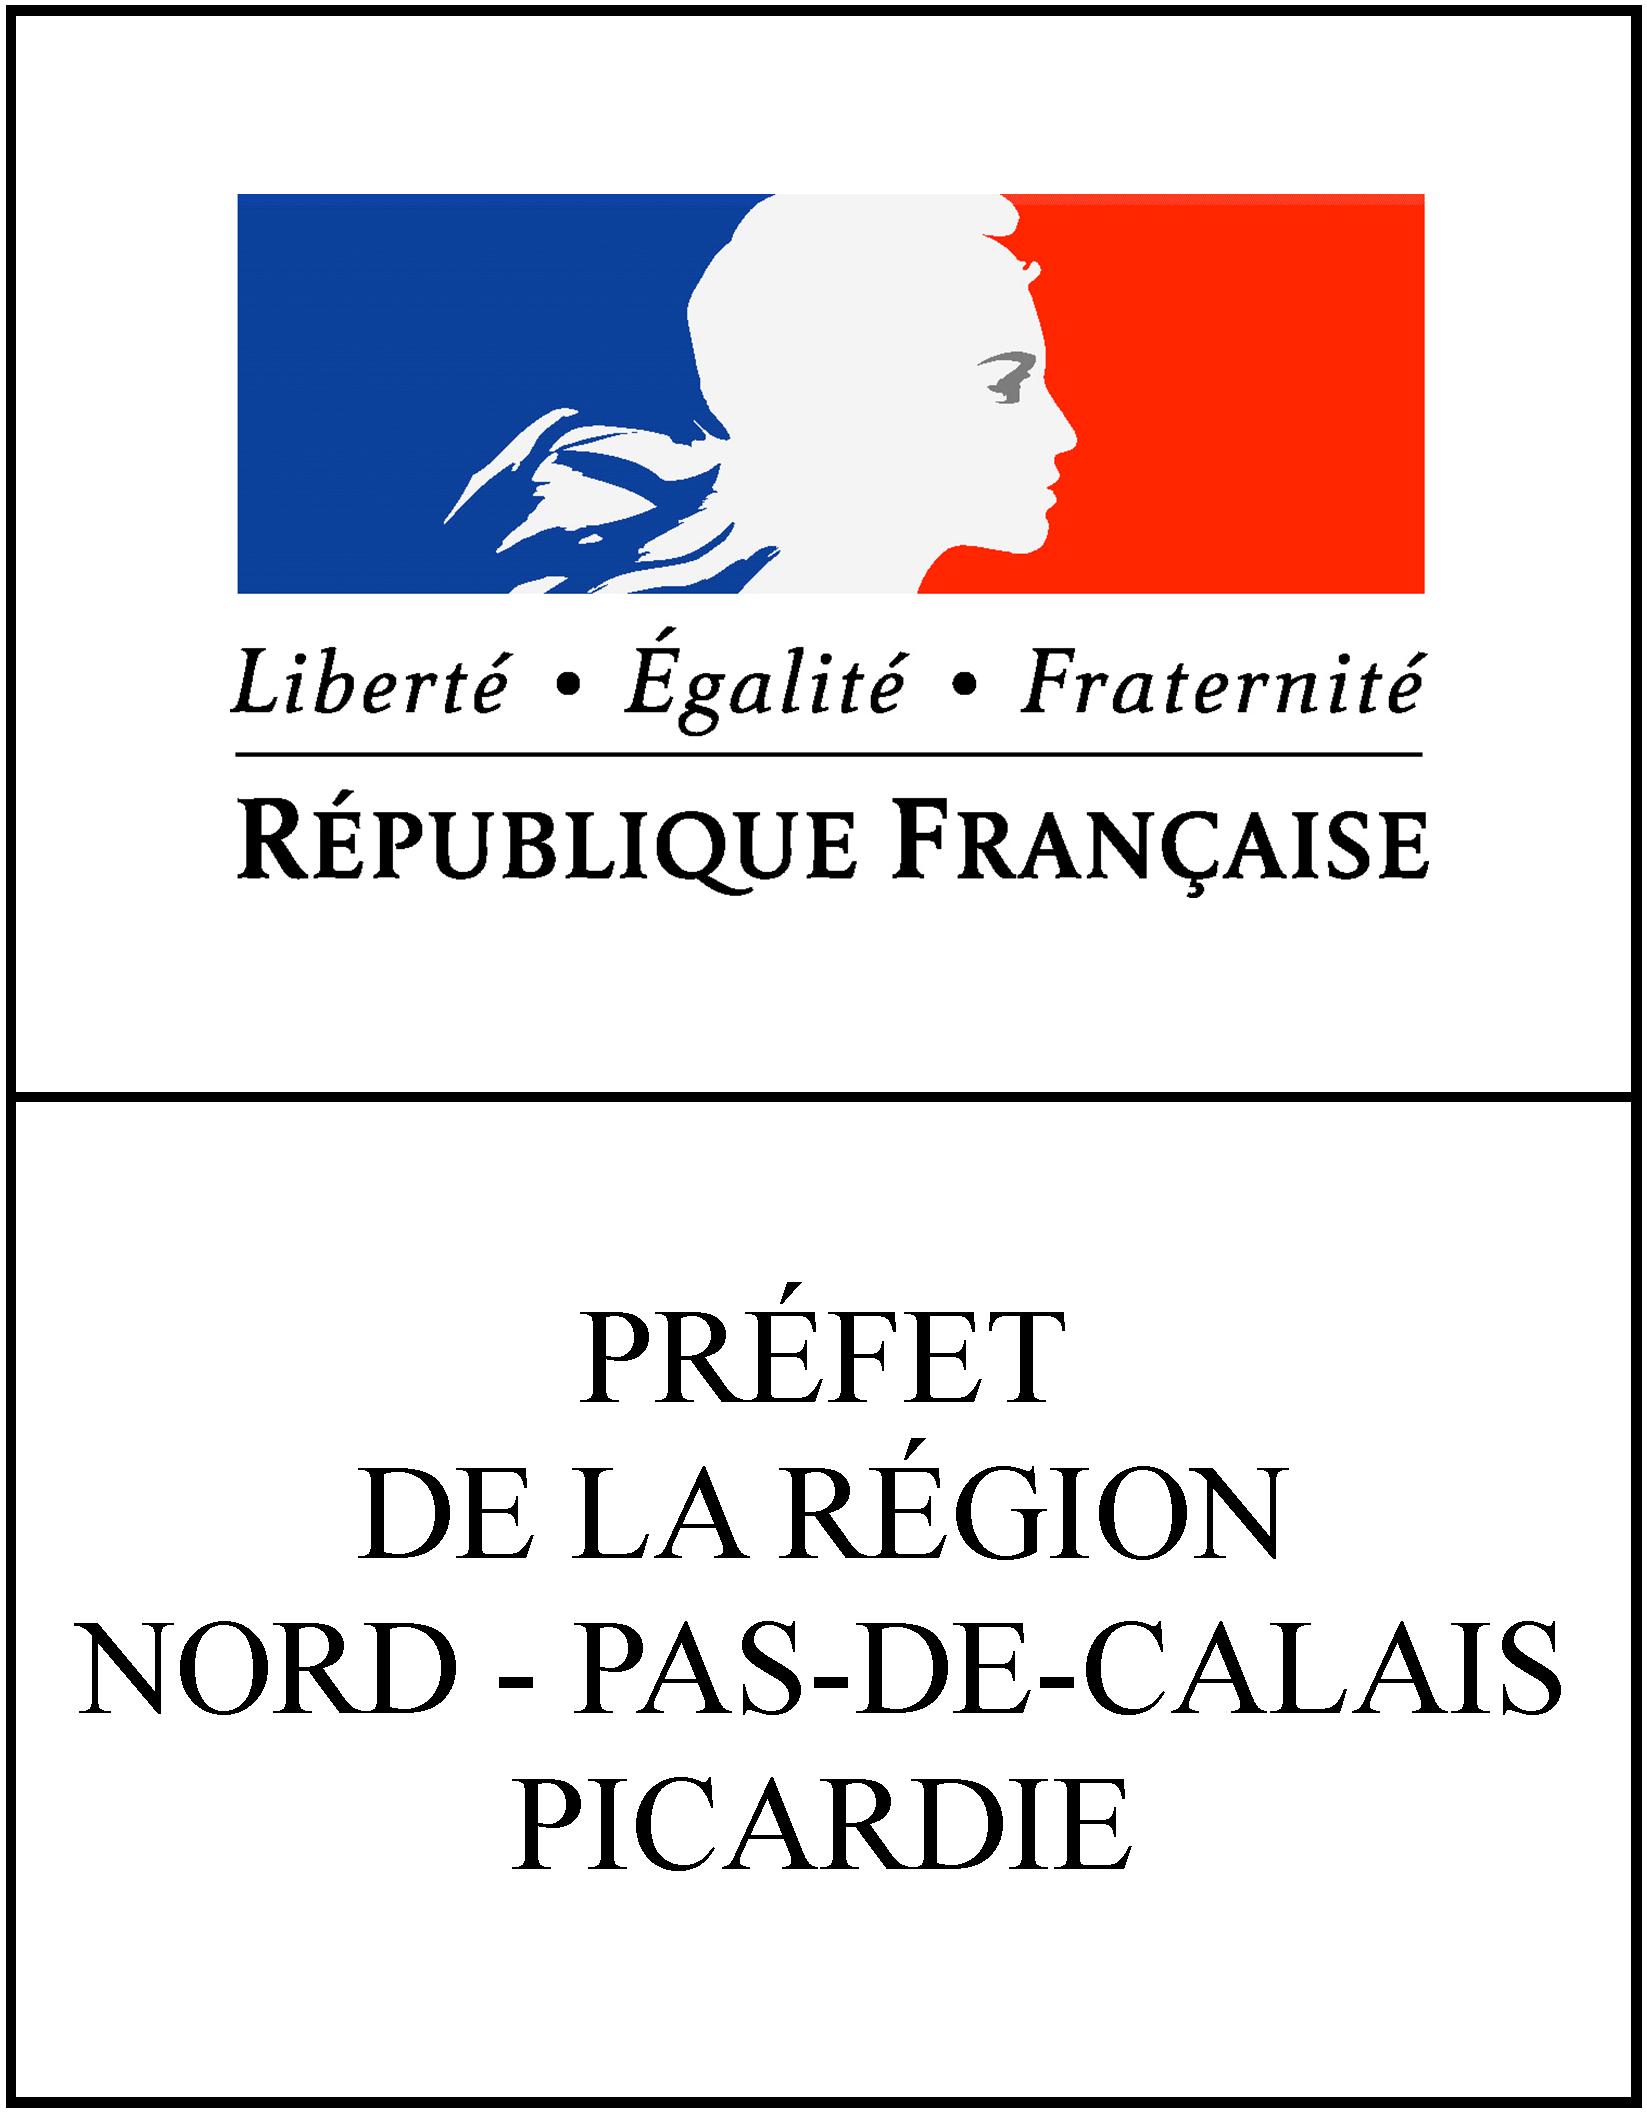 Prefet Picardie